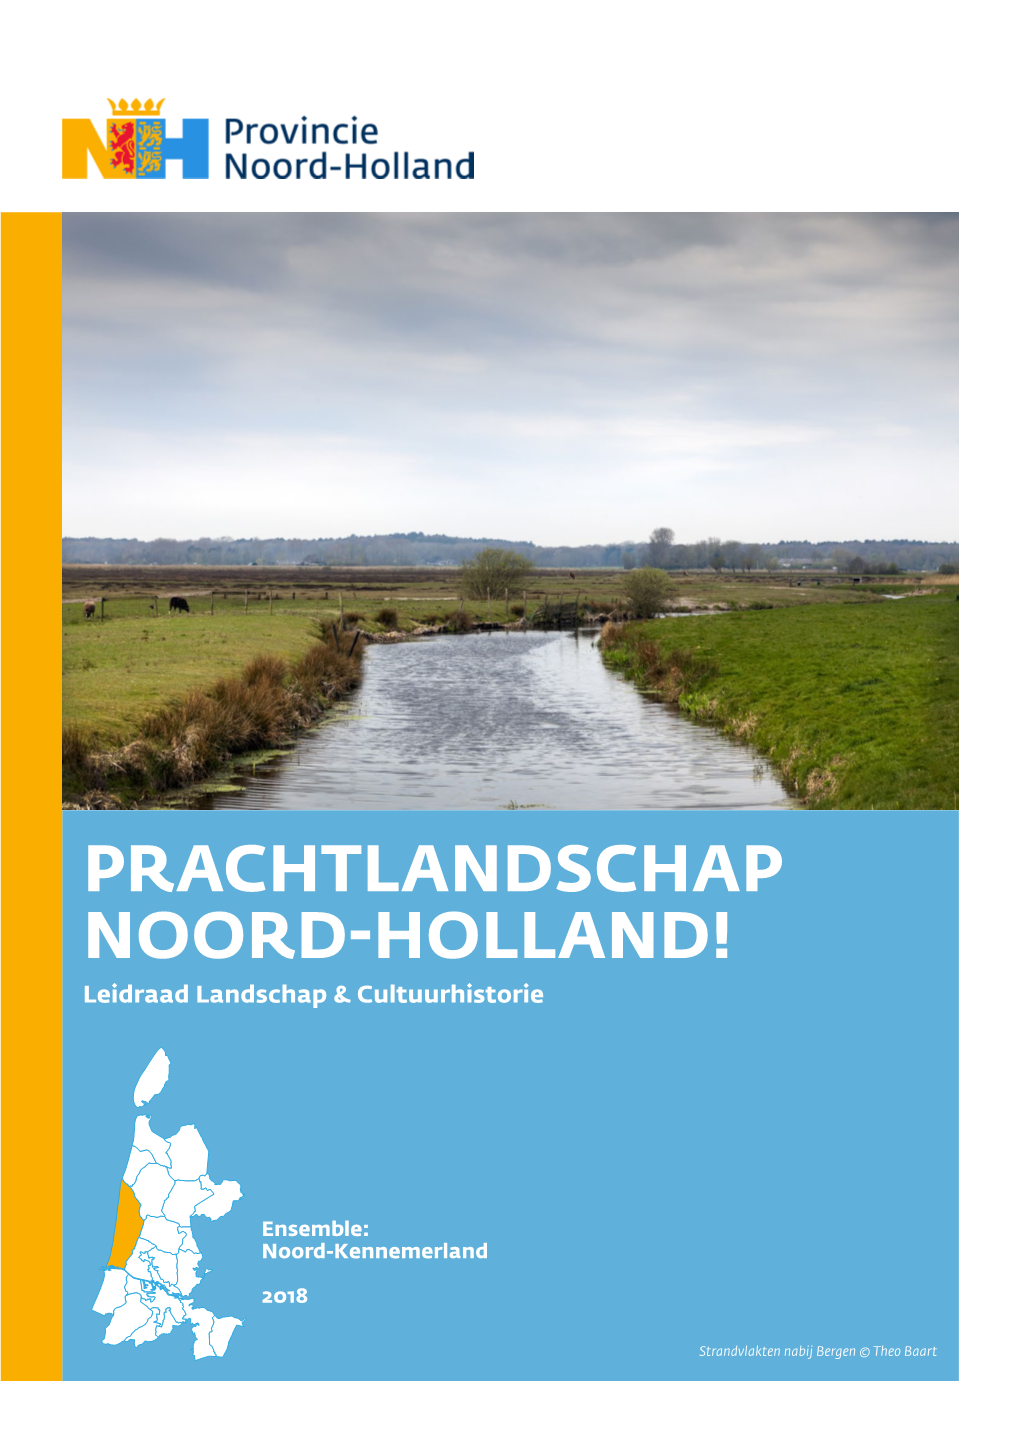 Download Noord-Kennemerland